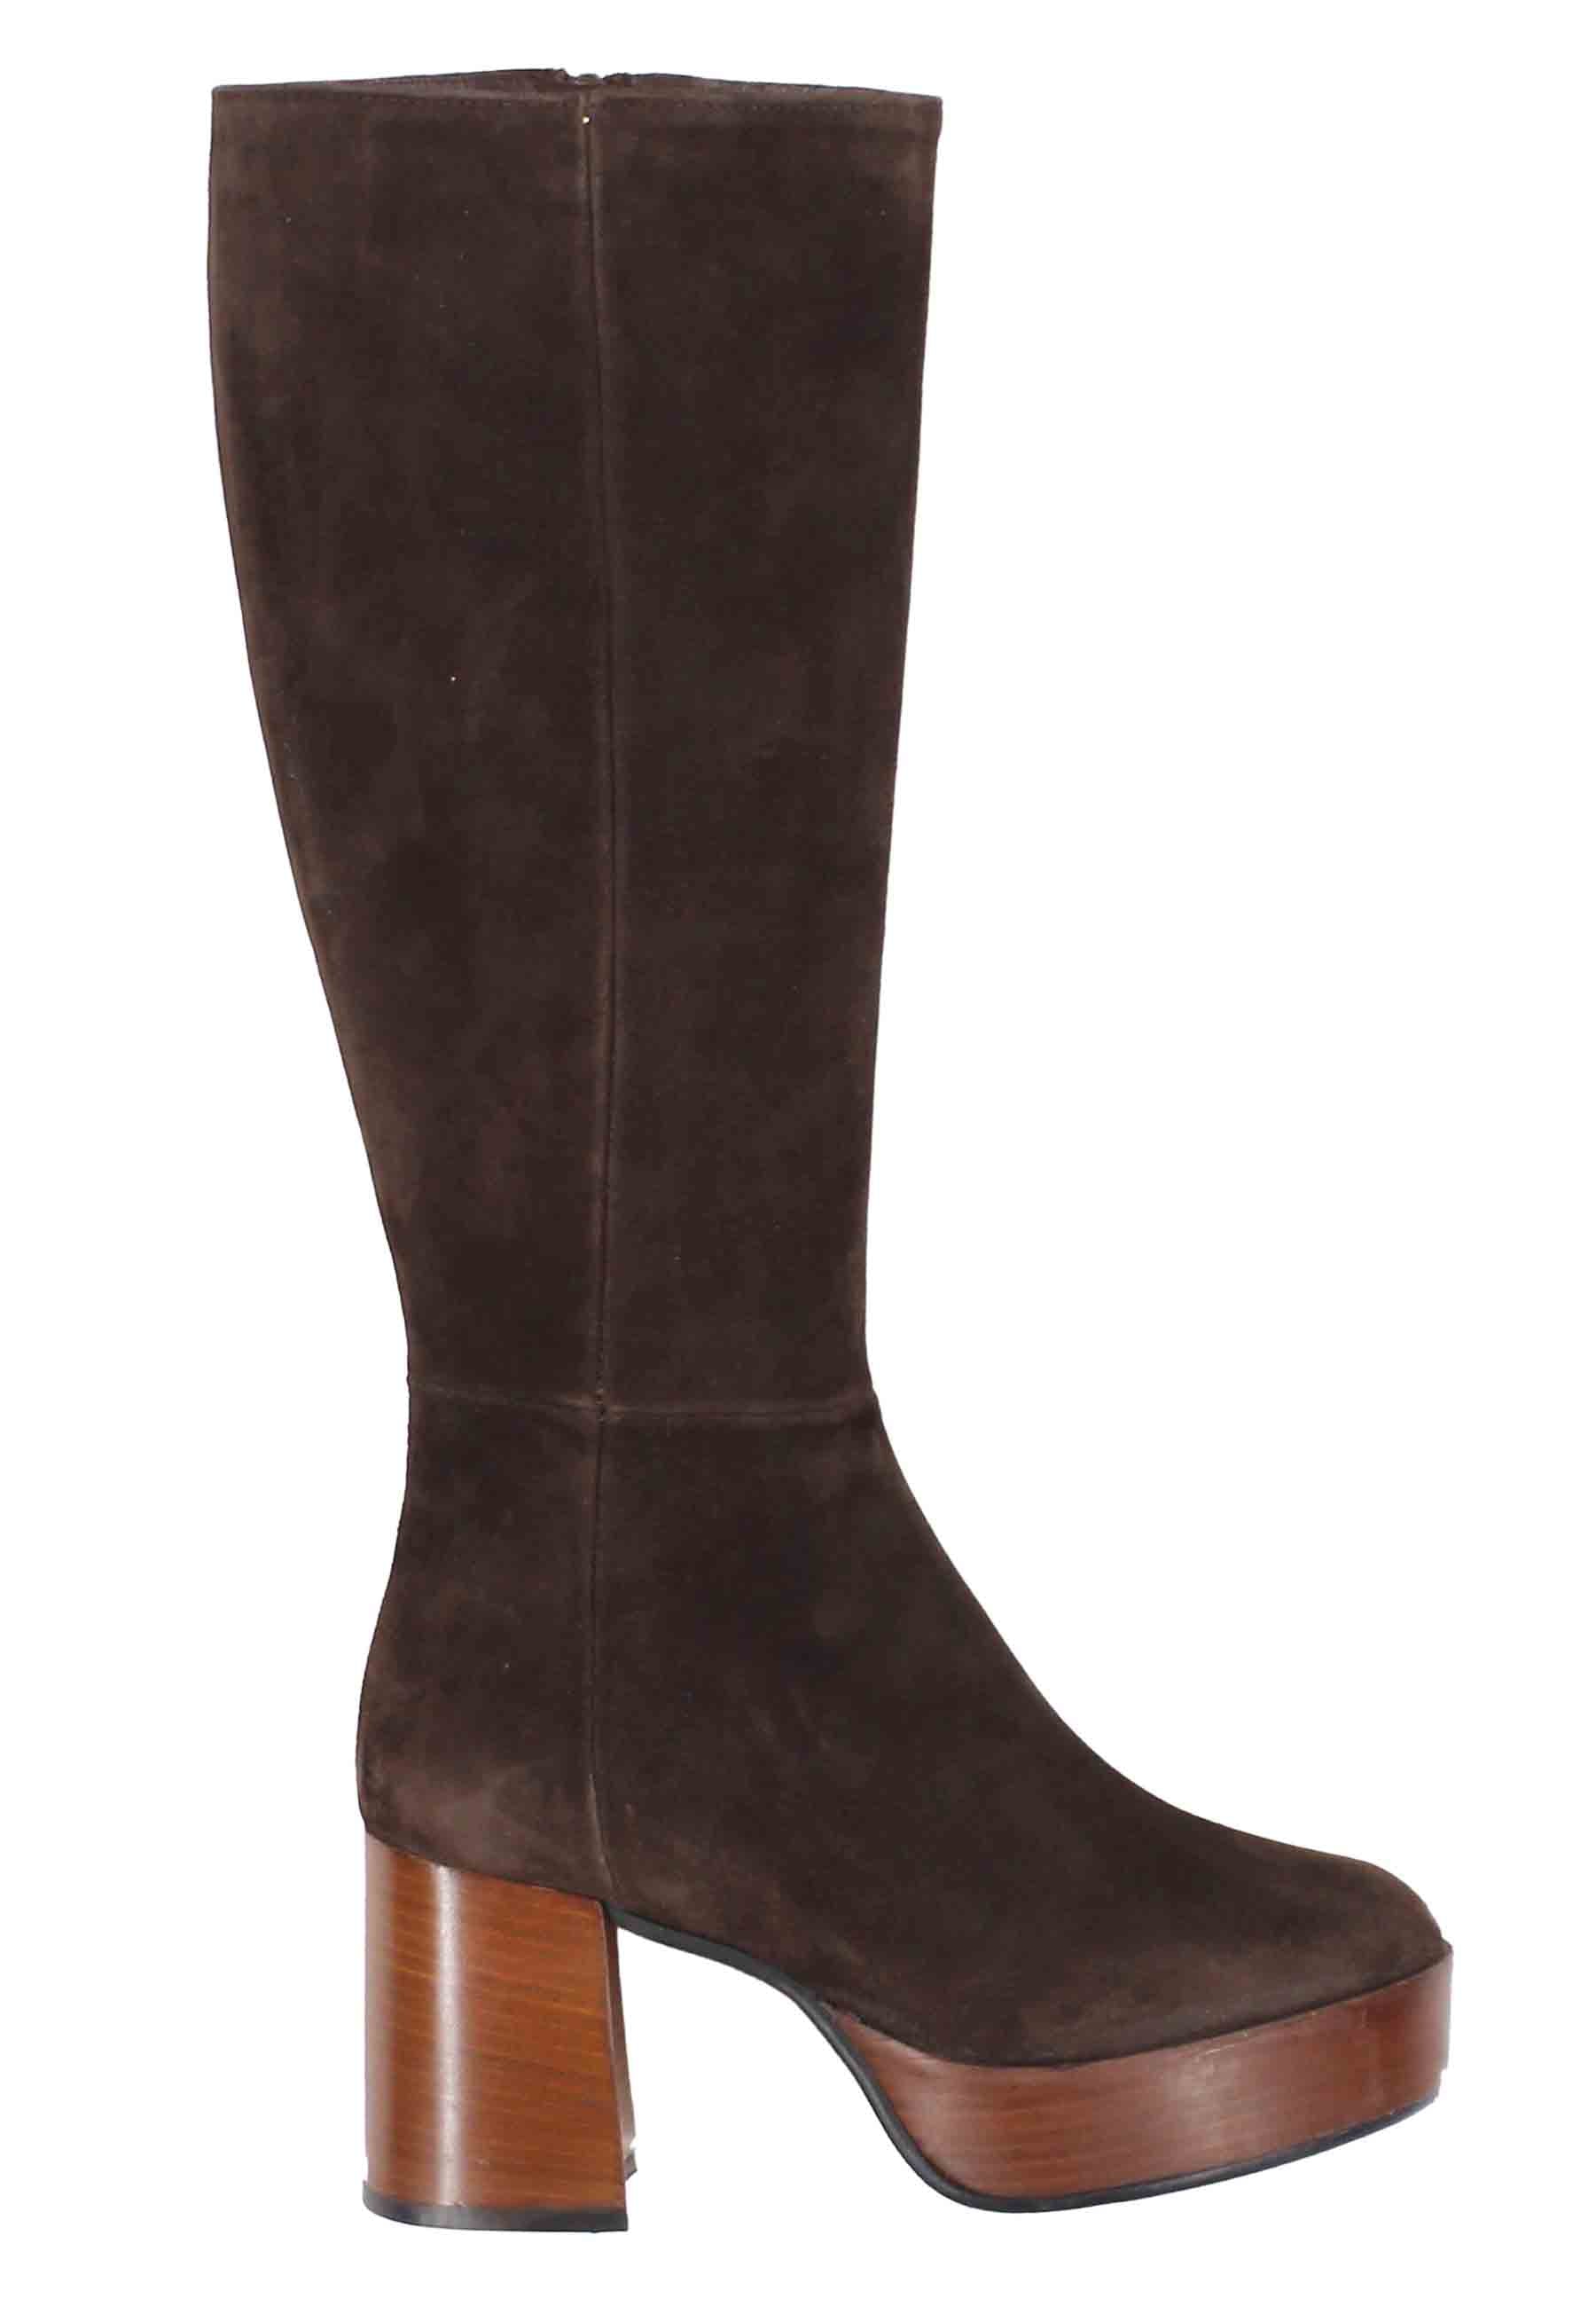 Women's boots in dark brown suede with heel and platform